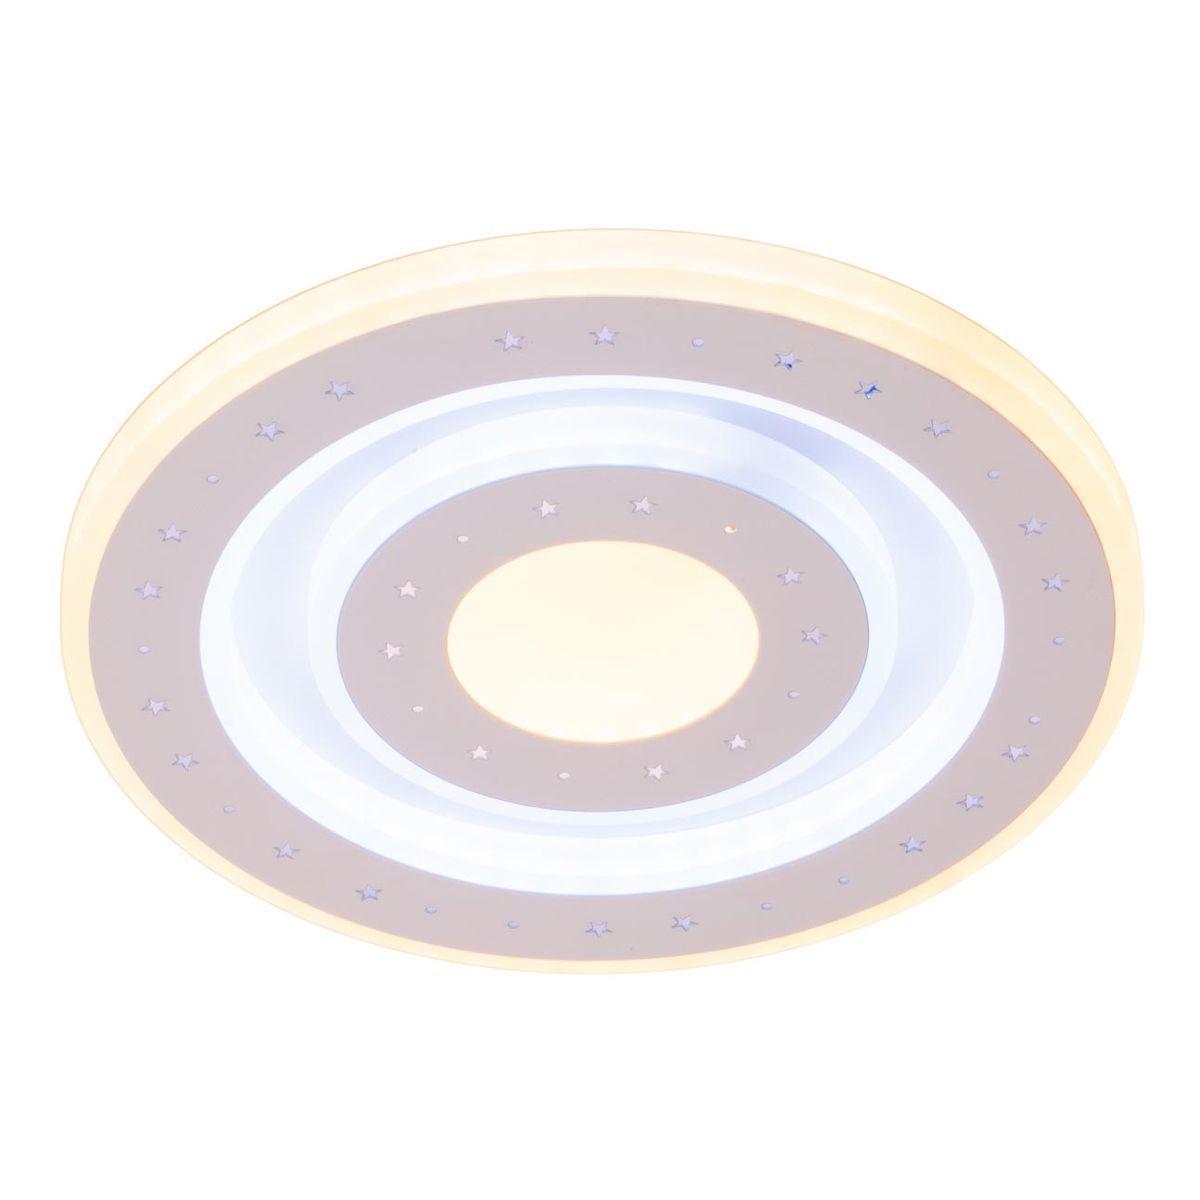 Настенно-потолочный светодиодный светильник IMEX PLW-3026-200 настенно потолочный светодиодный светильник imex plw 3027 200